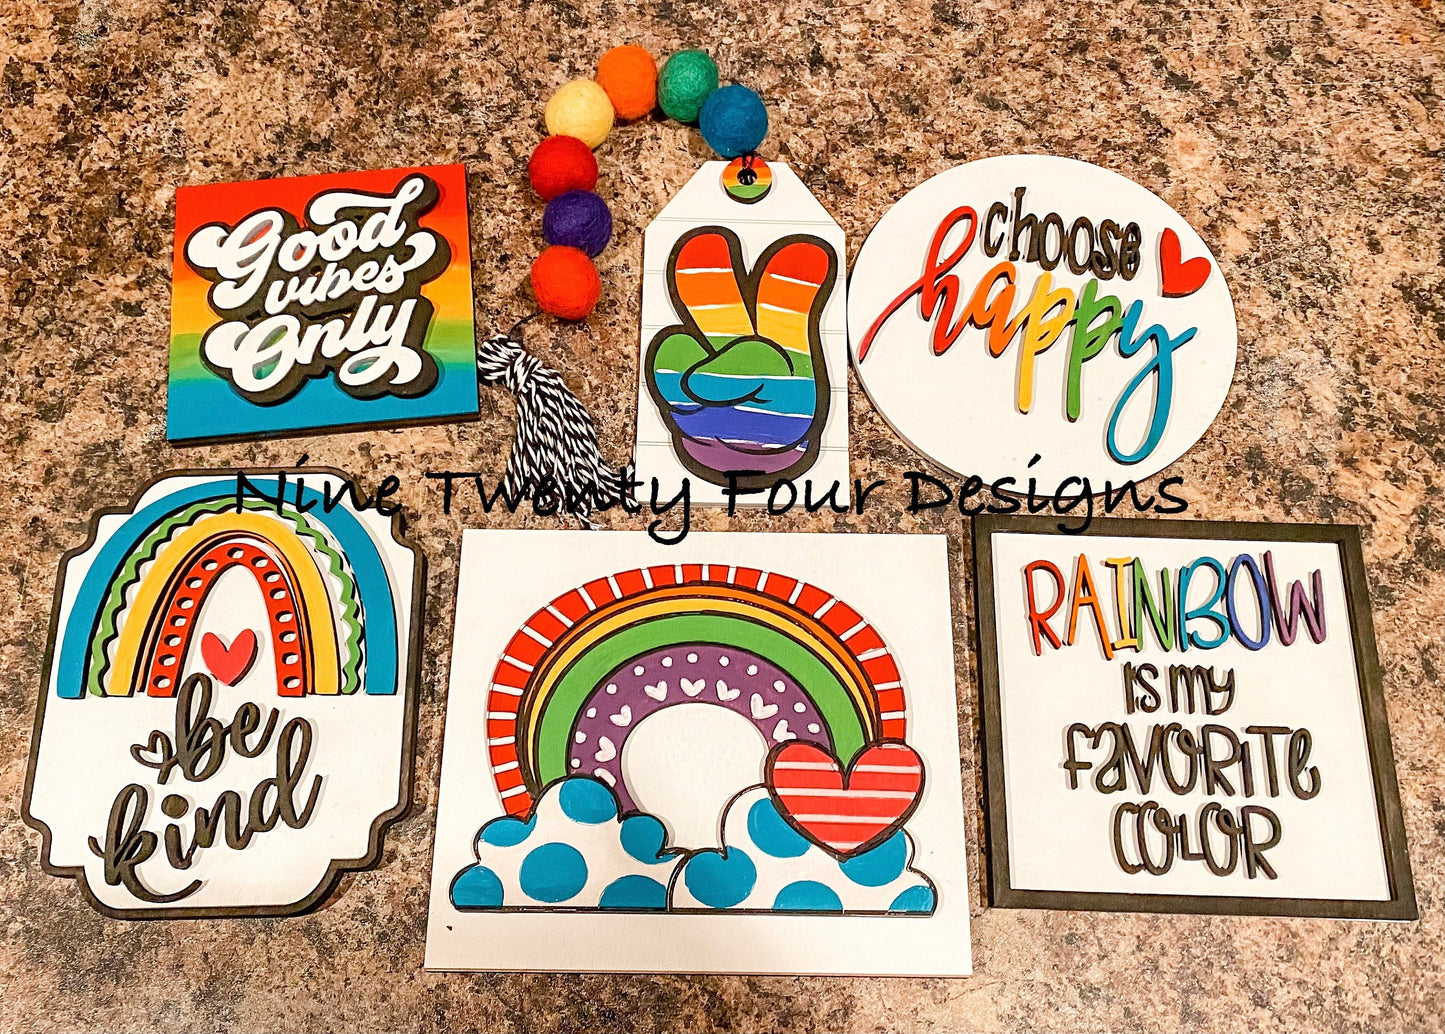 Rainbow tiered tray decor SIGNS, rainbow sign, rainbow decor, Rae Dunn rainbow inspired